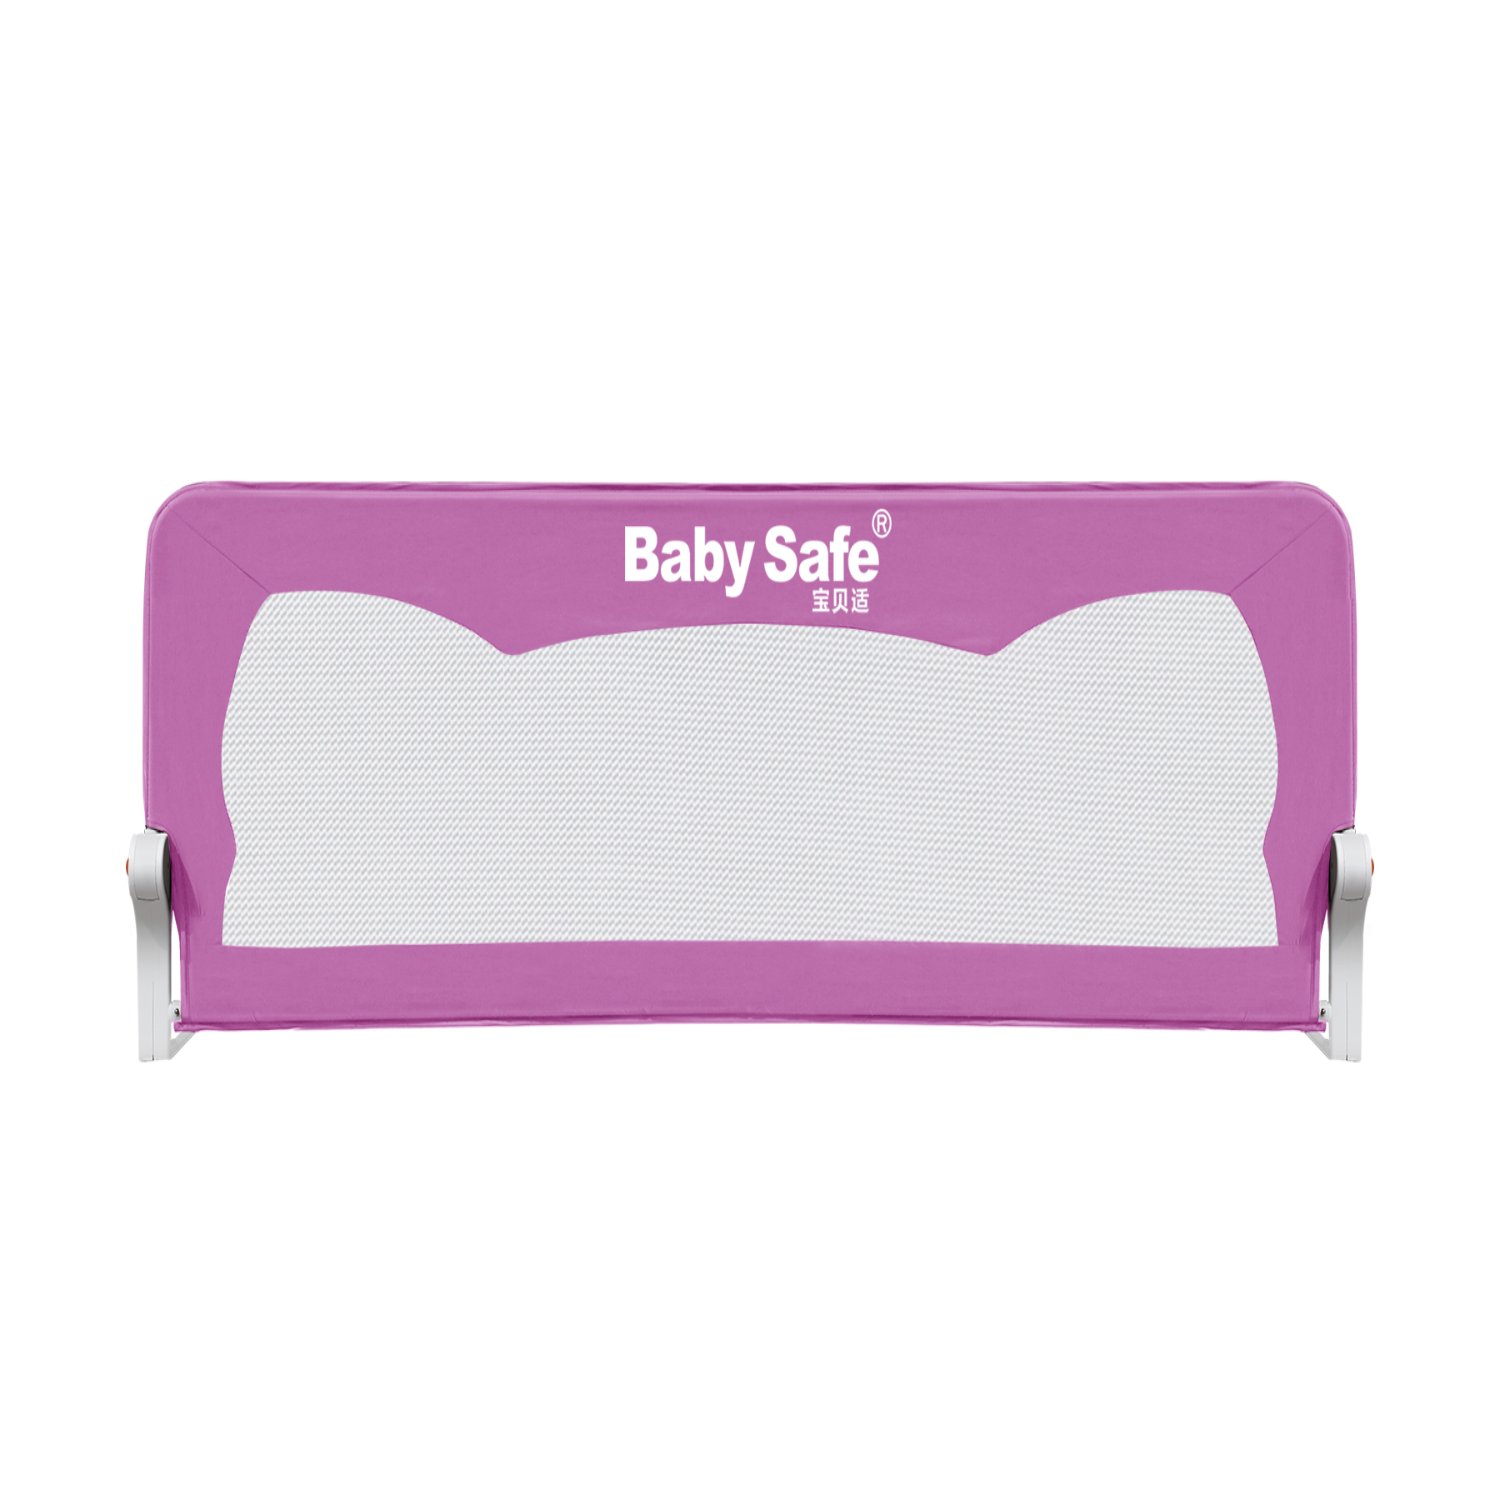 барьер защитный для кровати Baby Safe Ушки 180х42 розовый - фото 2